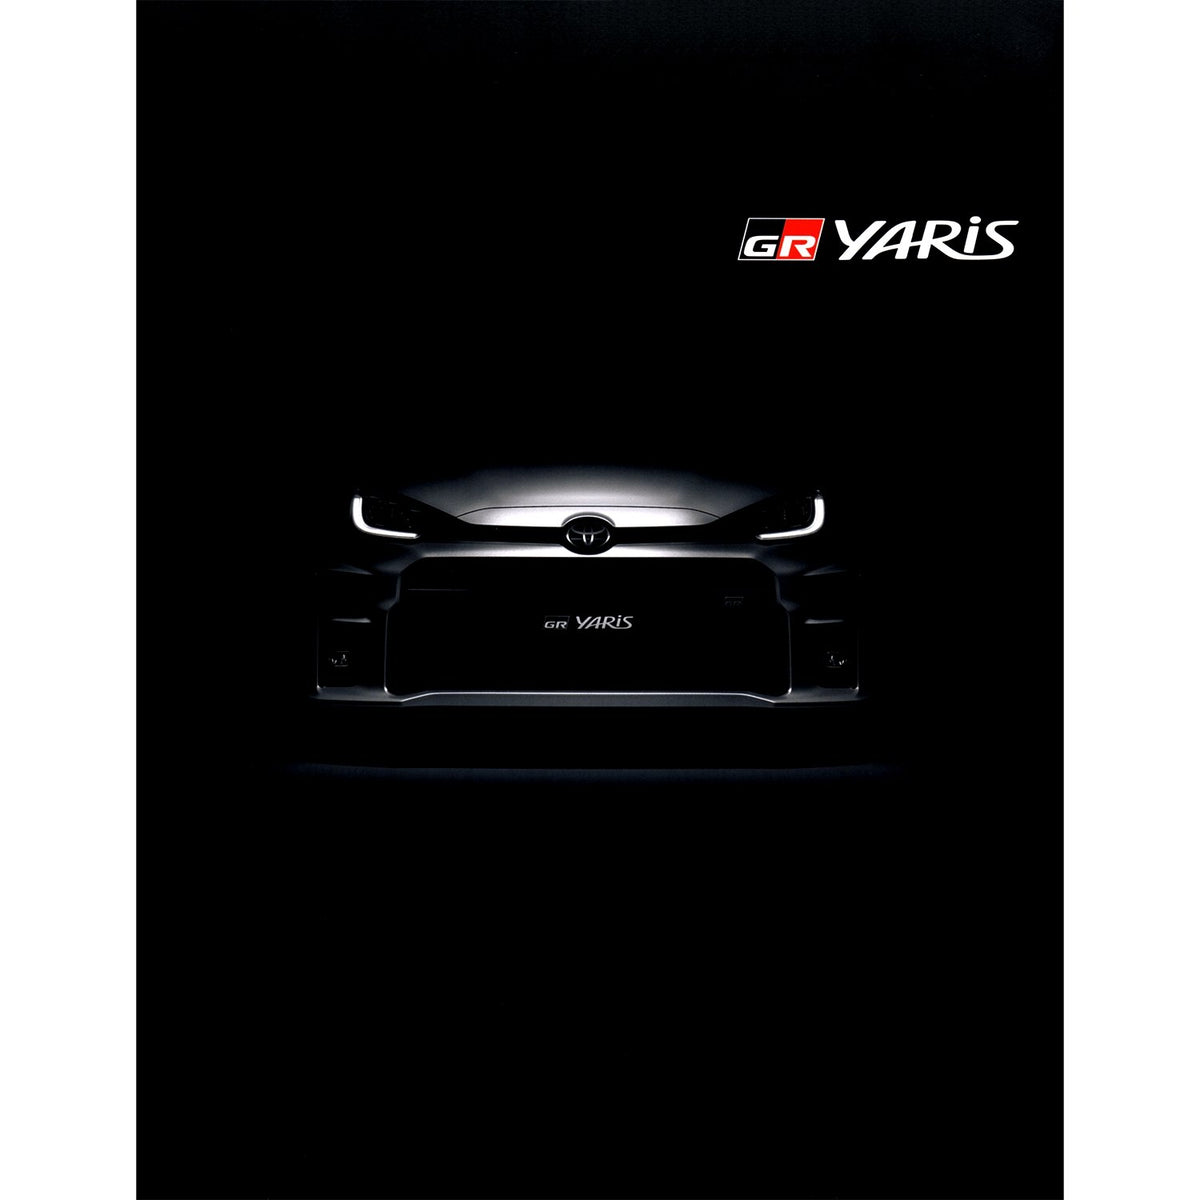 New JDM Japan Toyota GR Yaris Manufacturer Catalog Brochure Set - Sugoi JDM